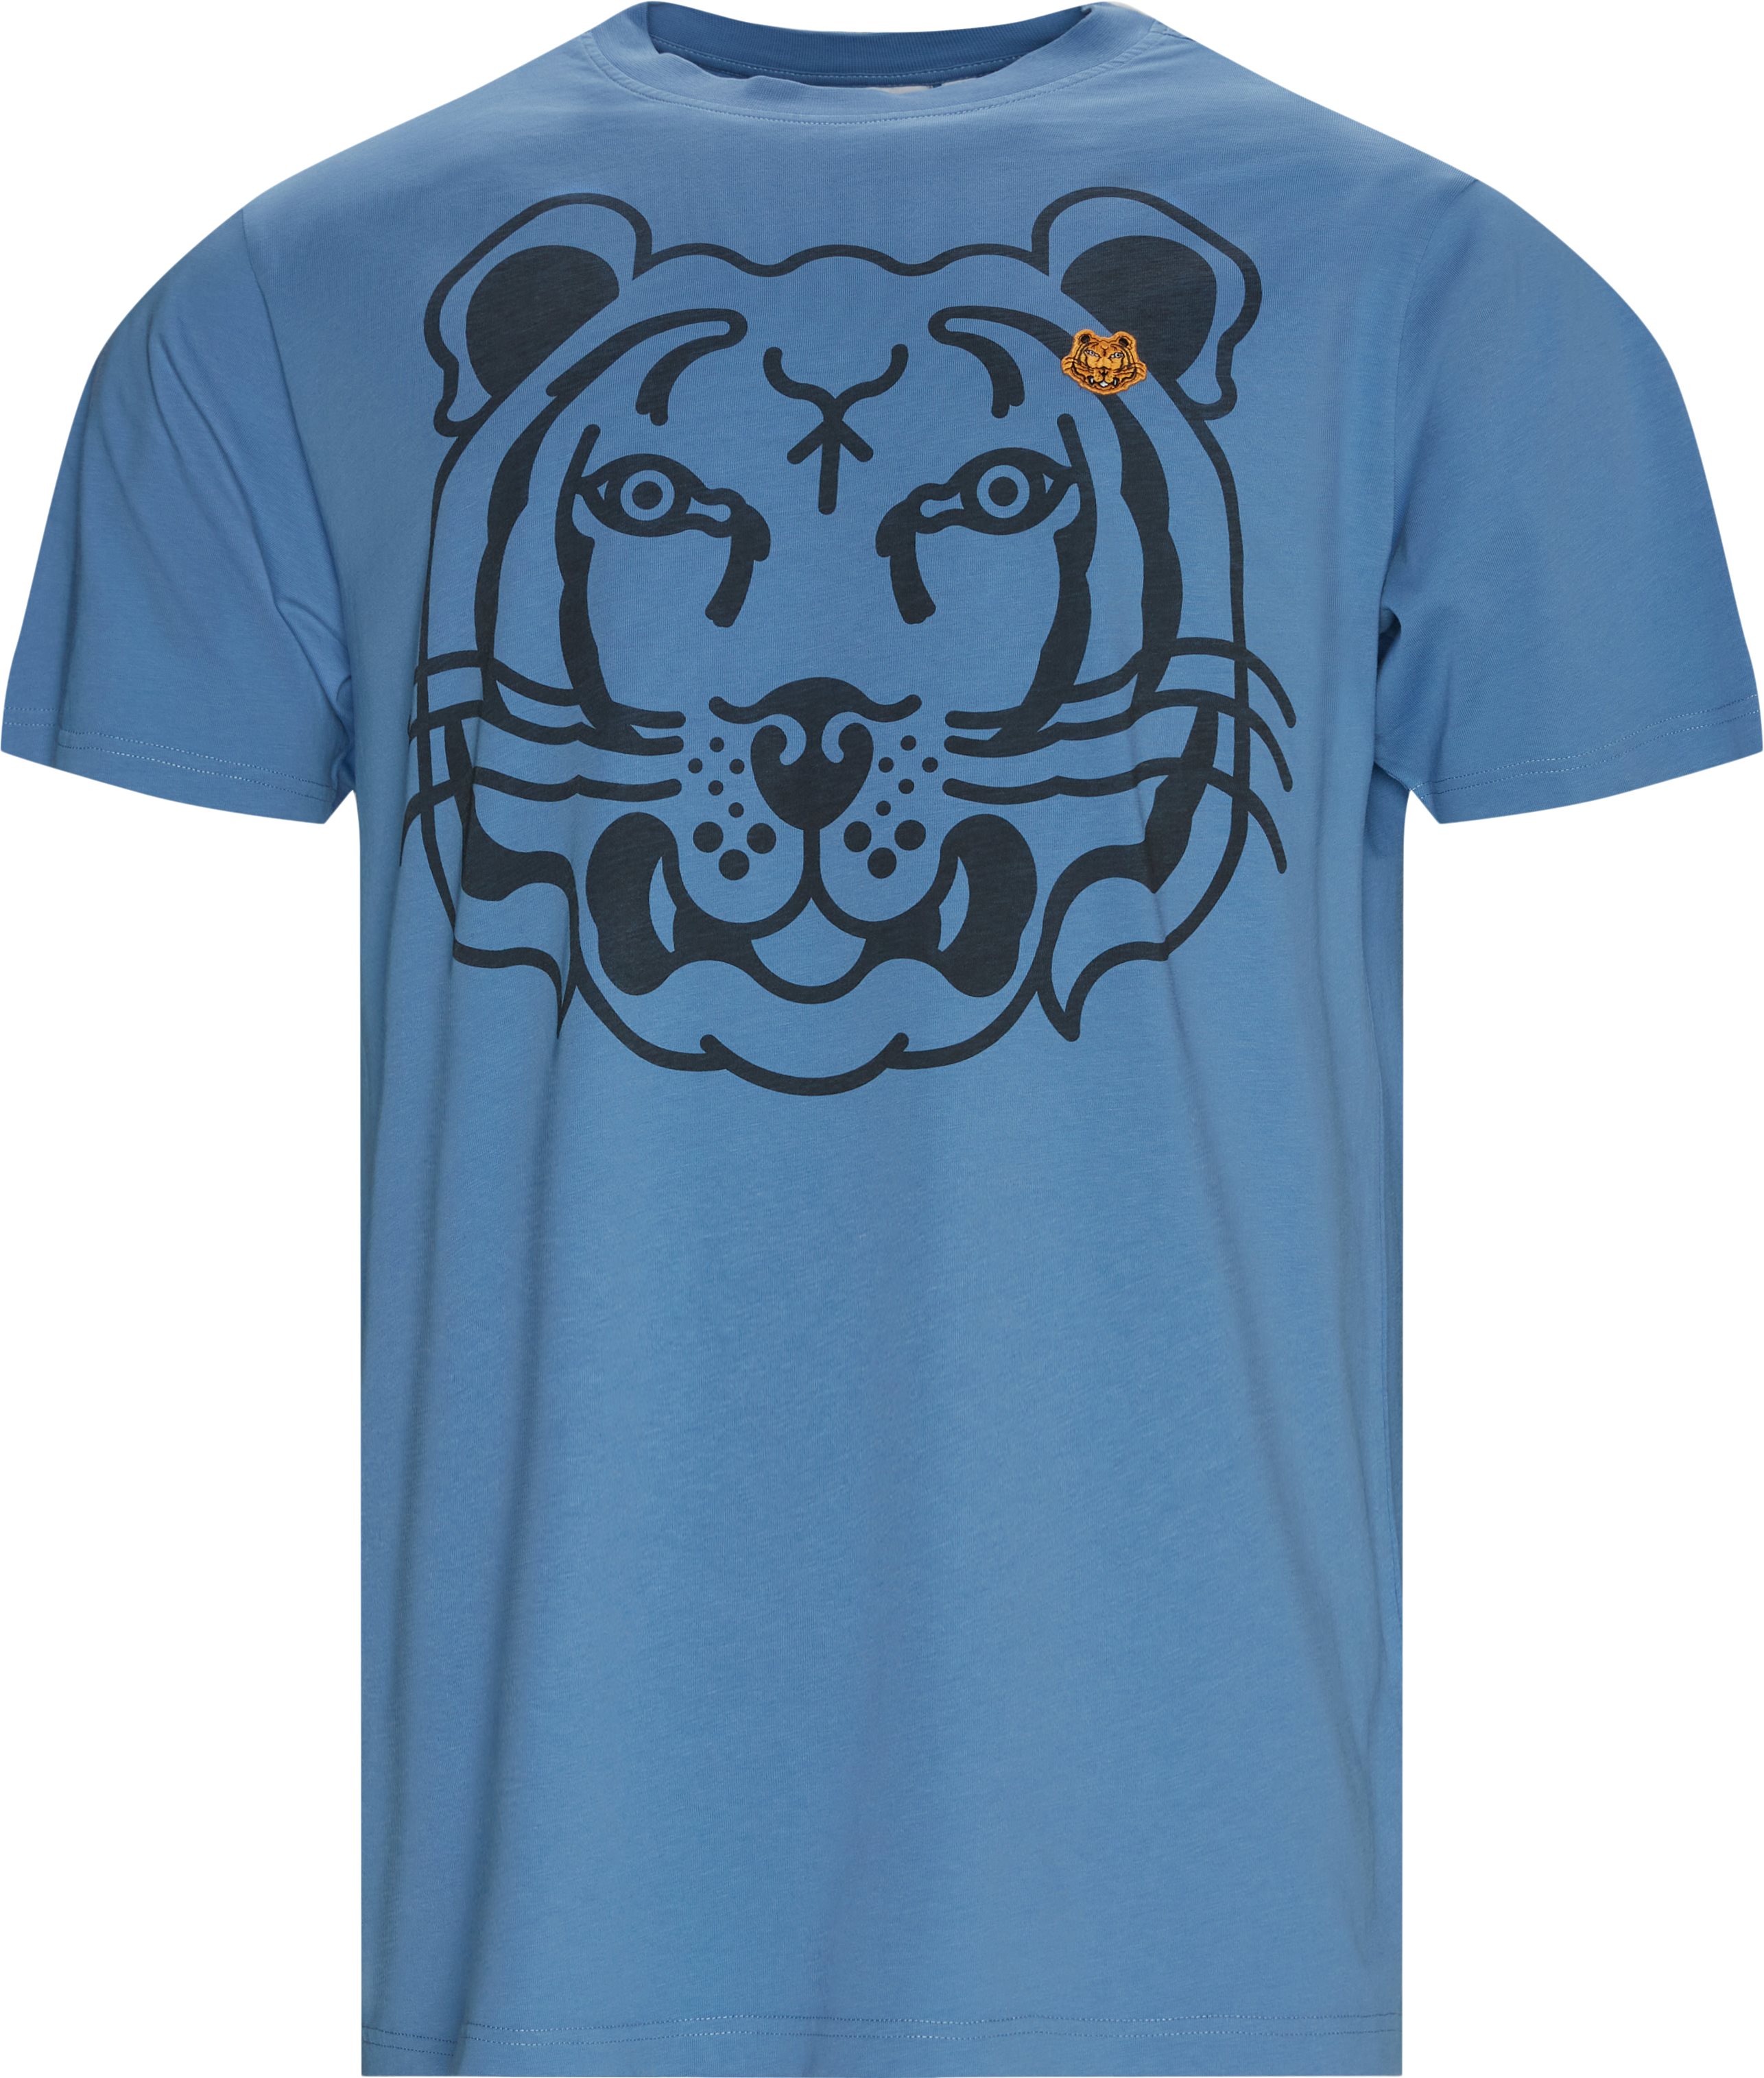 K-Tiger Tee - T-shirts - Oversize fit - Blå